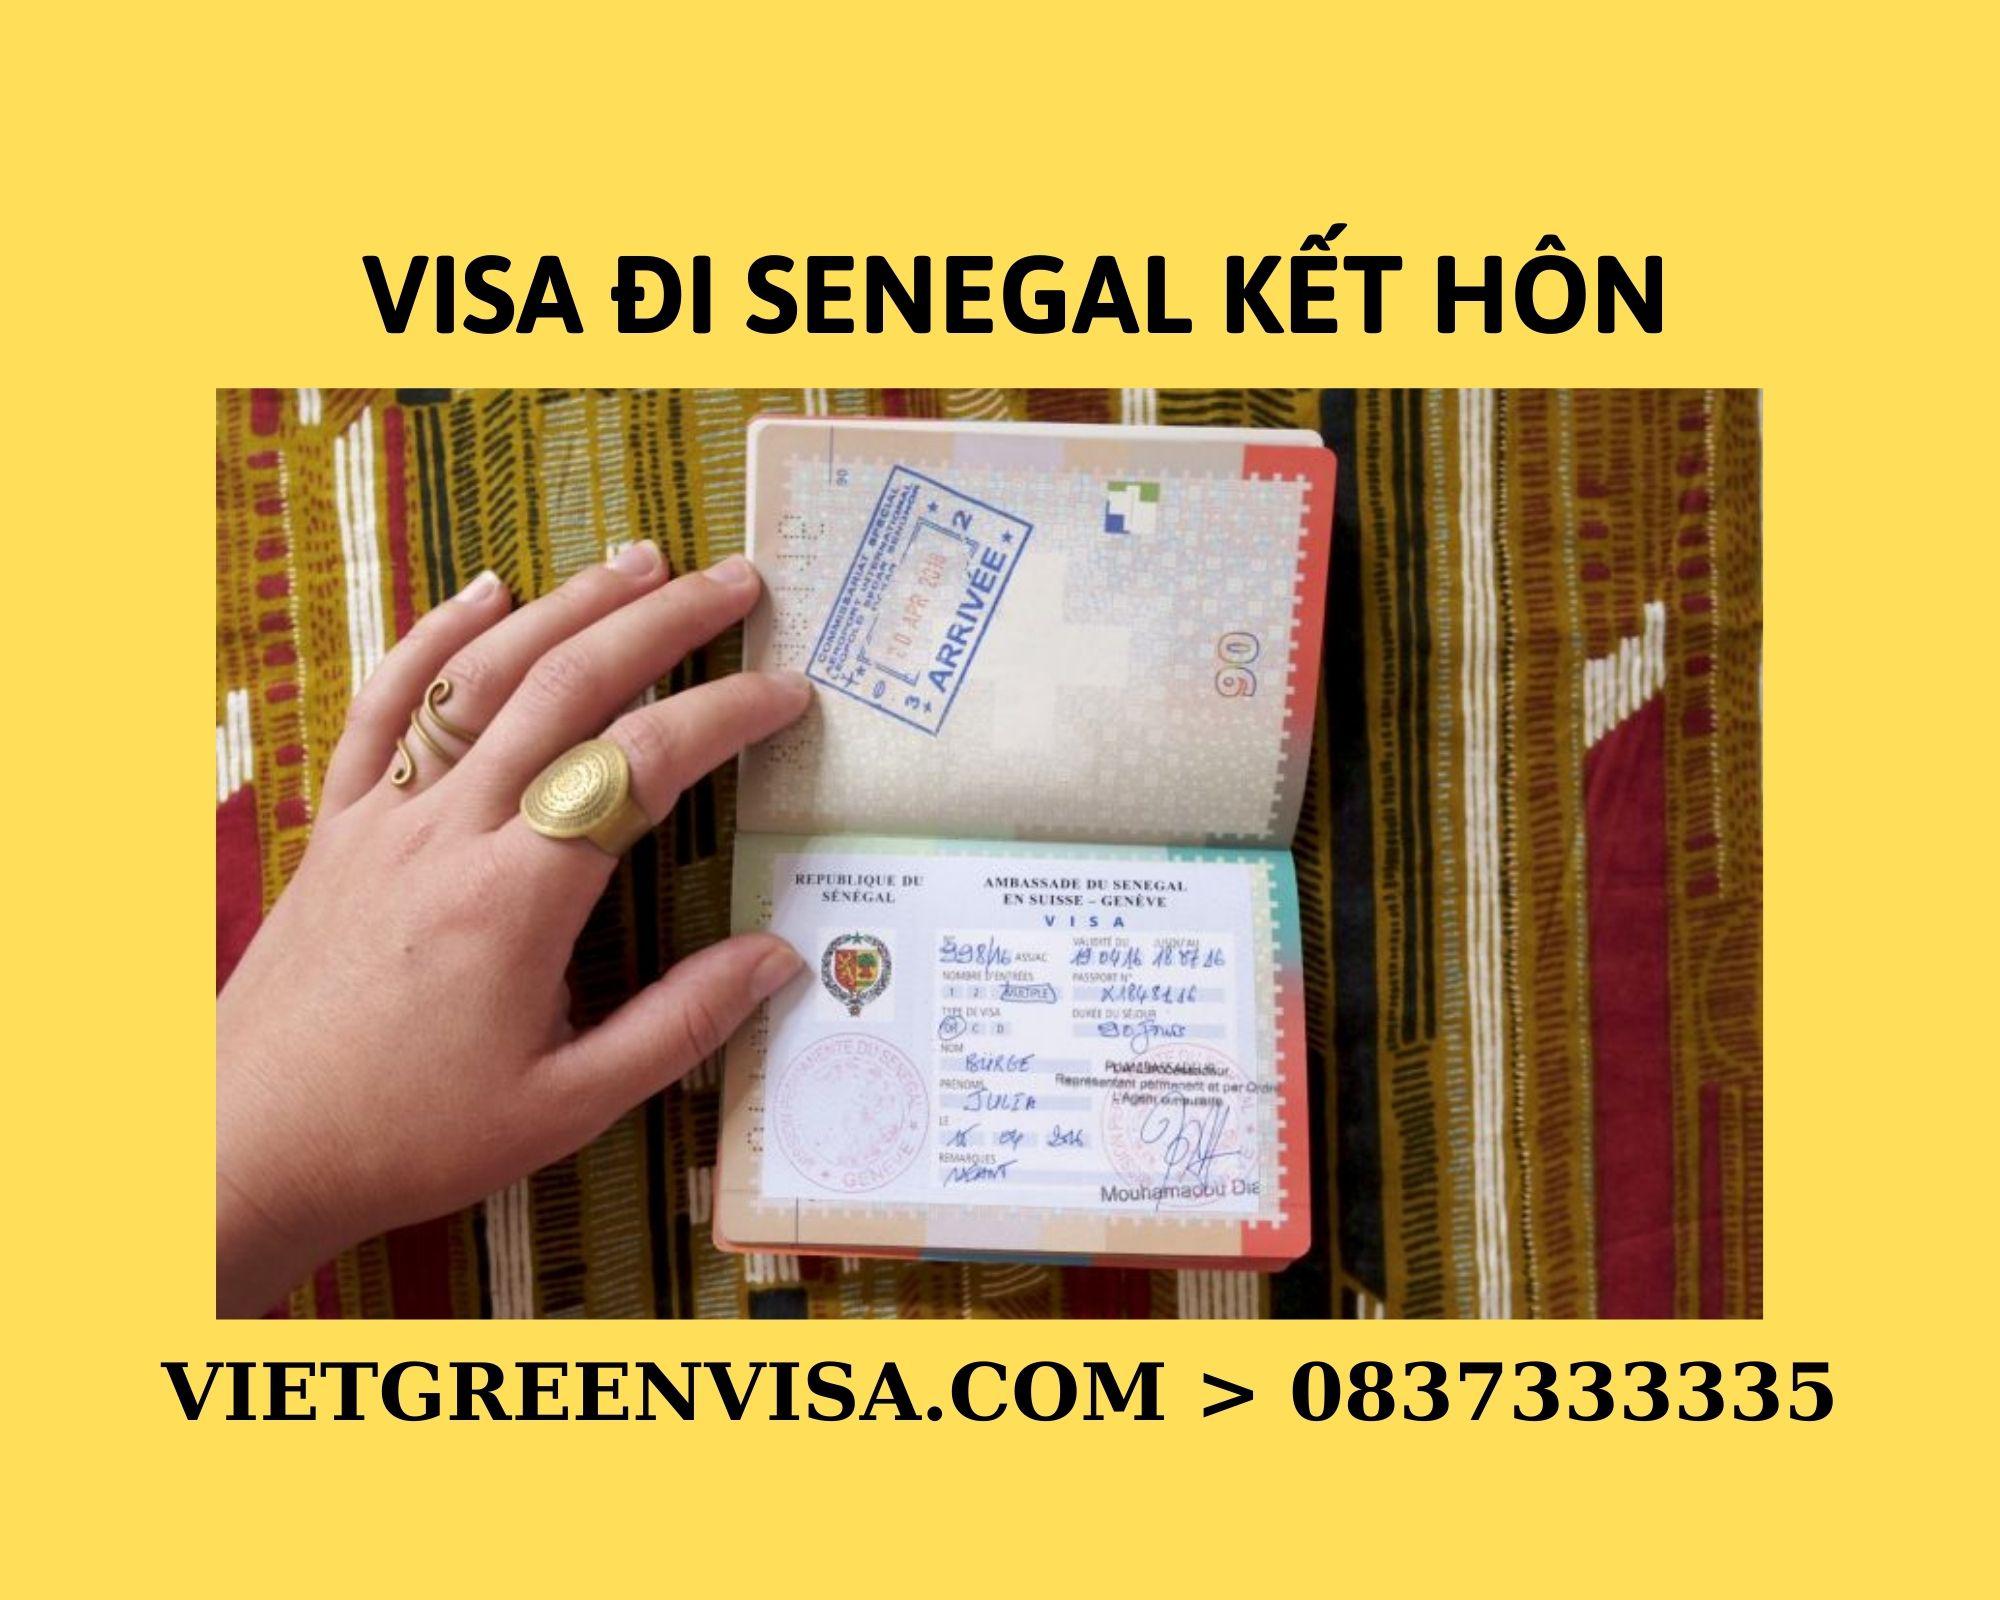 Dịch vụ xin Visa sang Senegal tổ chức đám cưới, kết hôn